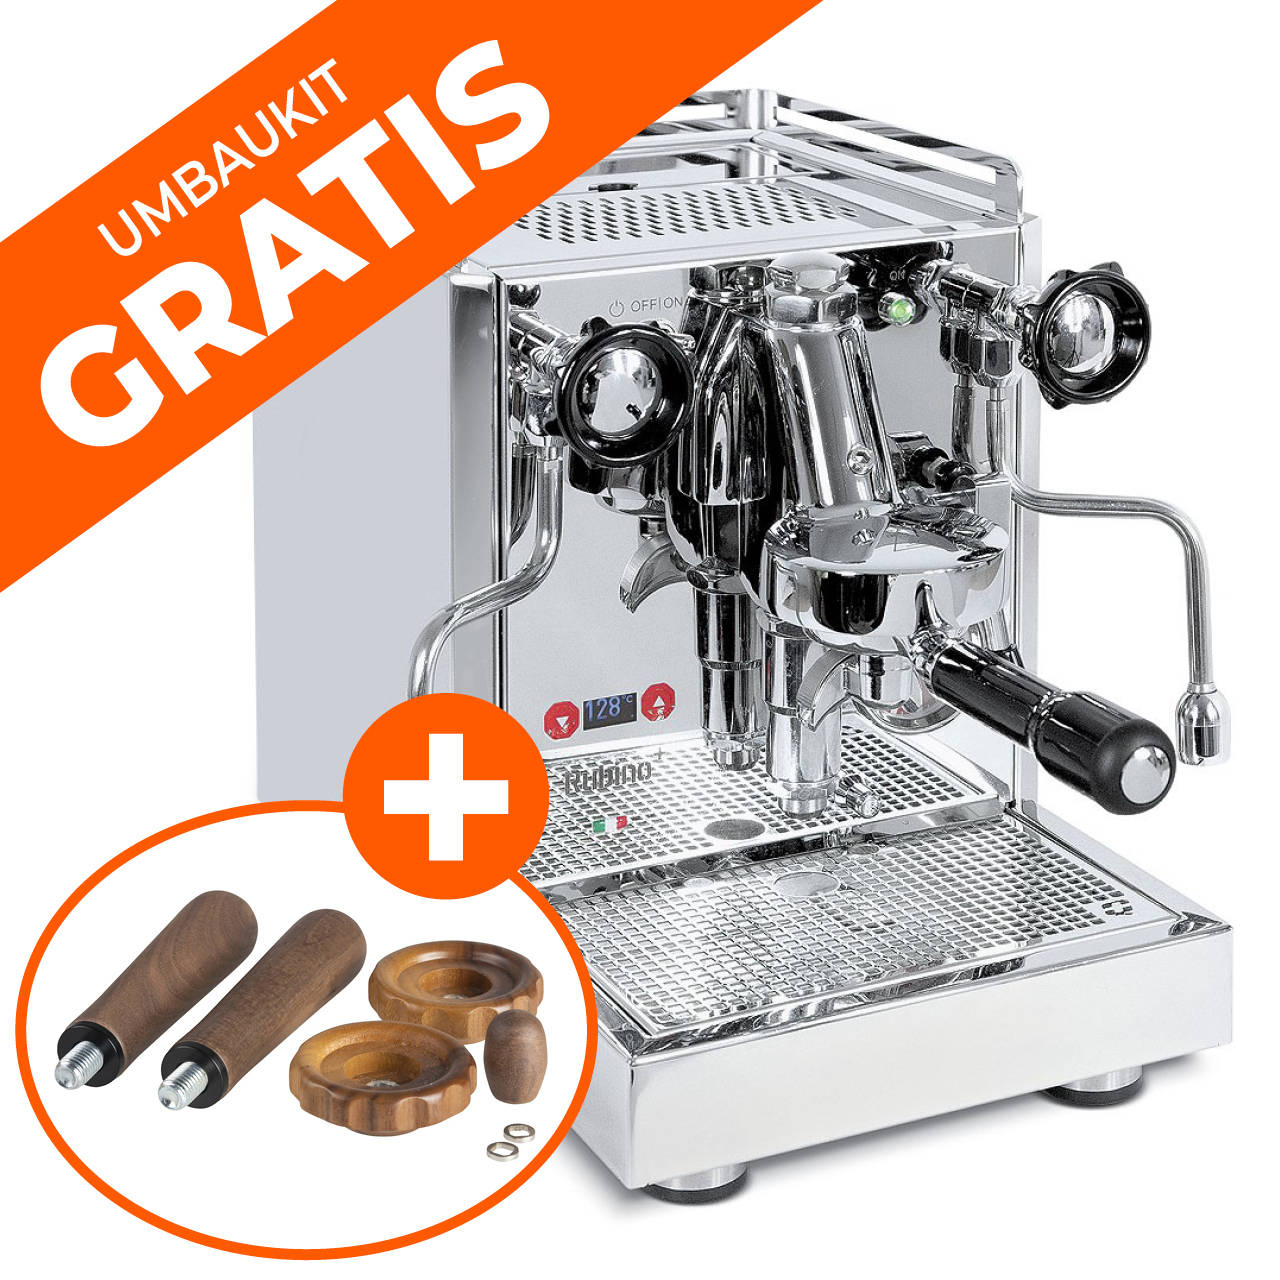 Quick Mill Espressomaschine Rubino Plus + GRATIS Umbaukit aus Holz für Rubino Plus